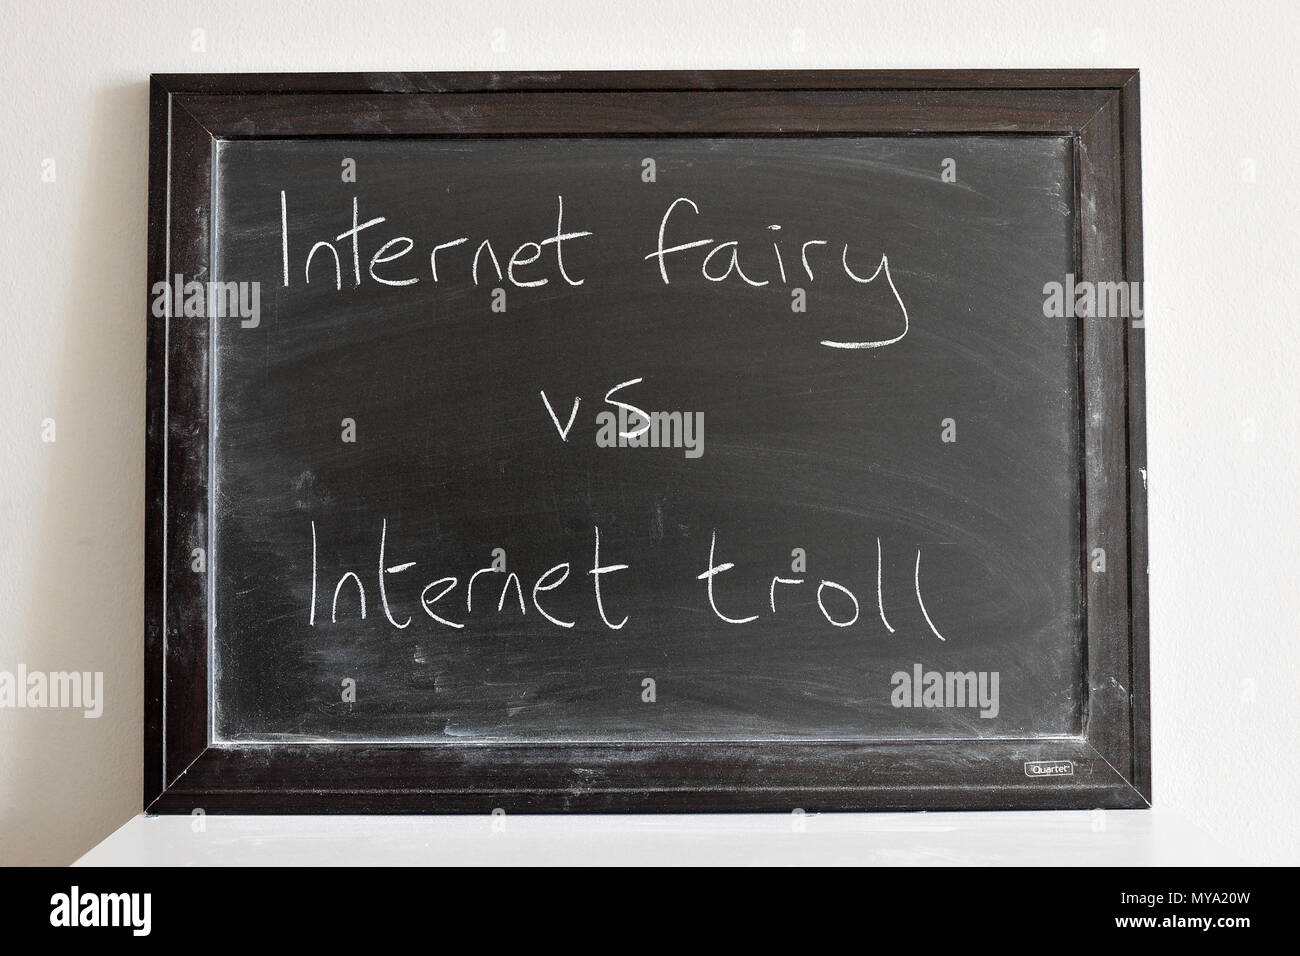 Internet fairy vs internet troll written in white chalk on a blackboard Stock Photo